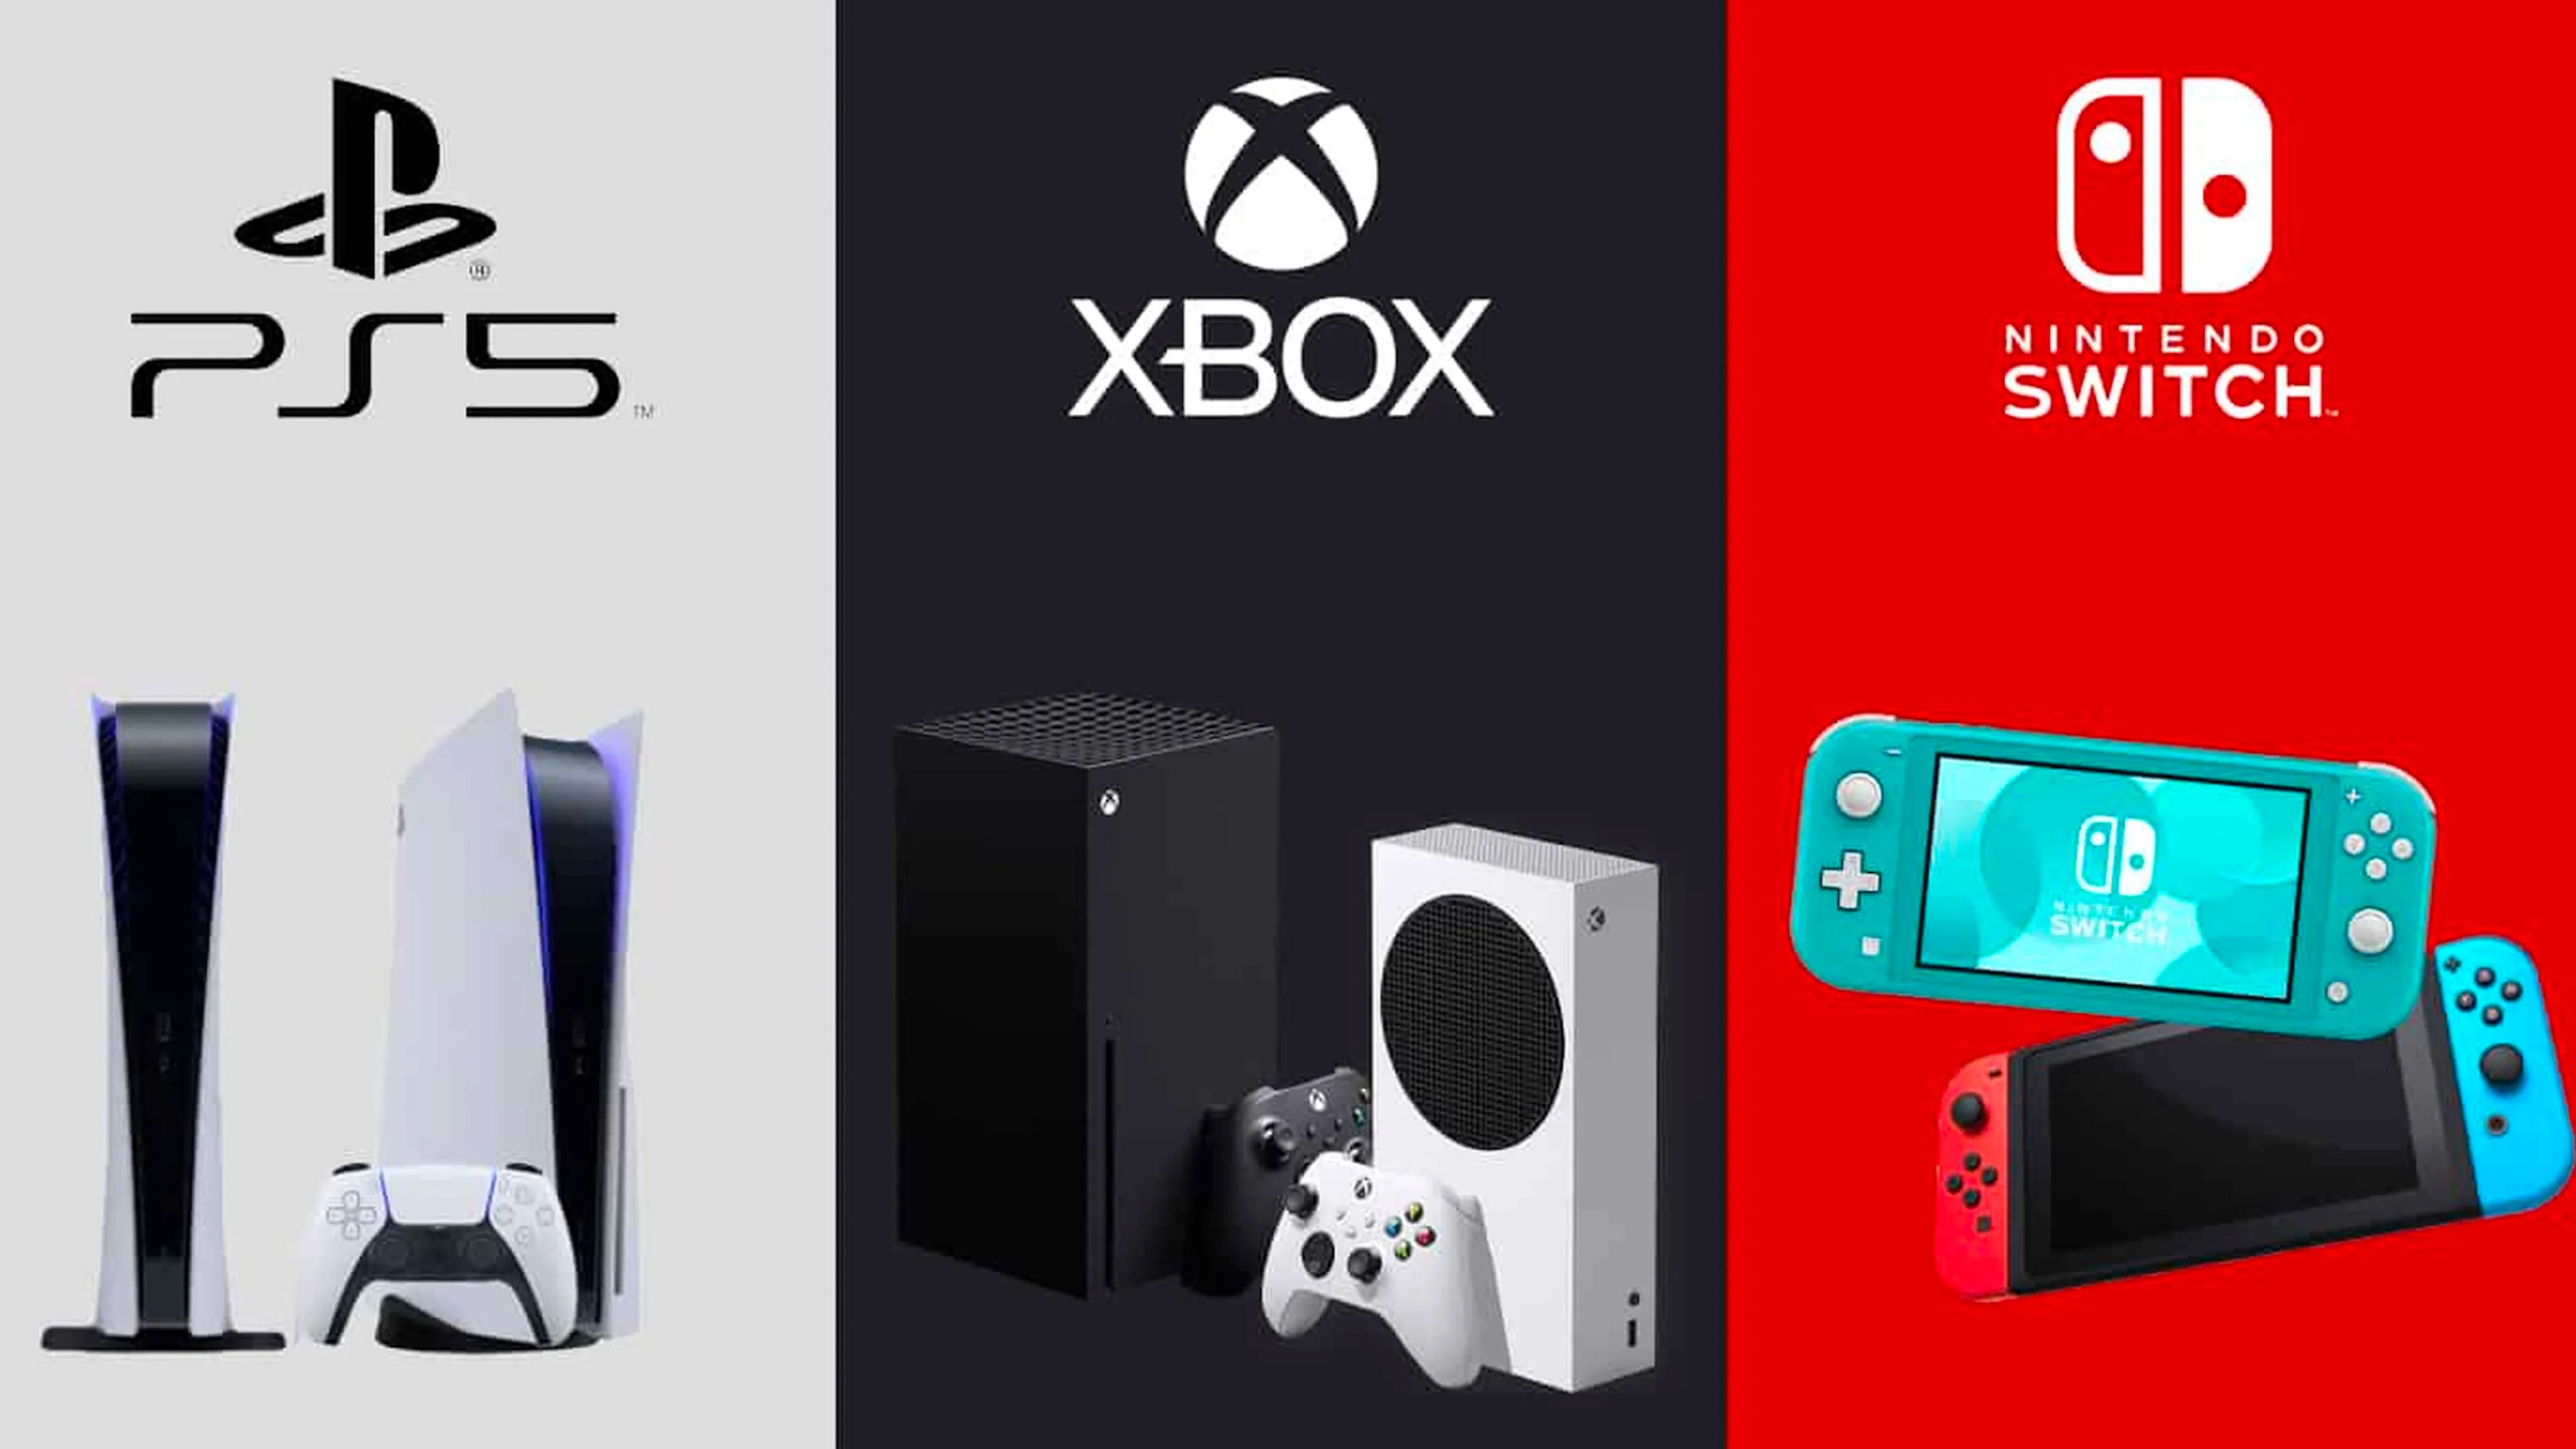 Qué juegos llegan junto a PS5 y Xbox Series X al mercado?